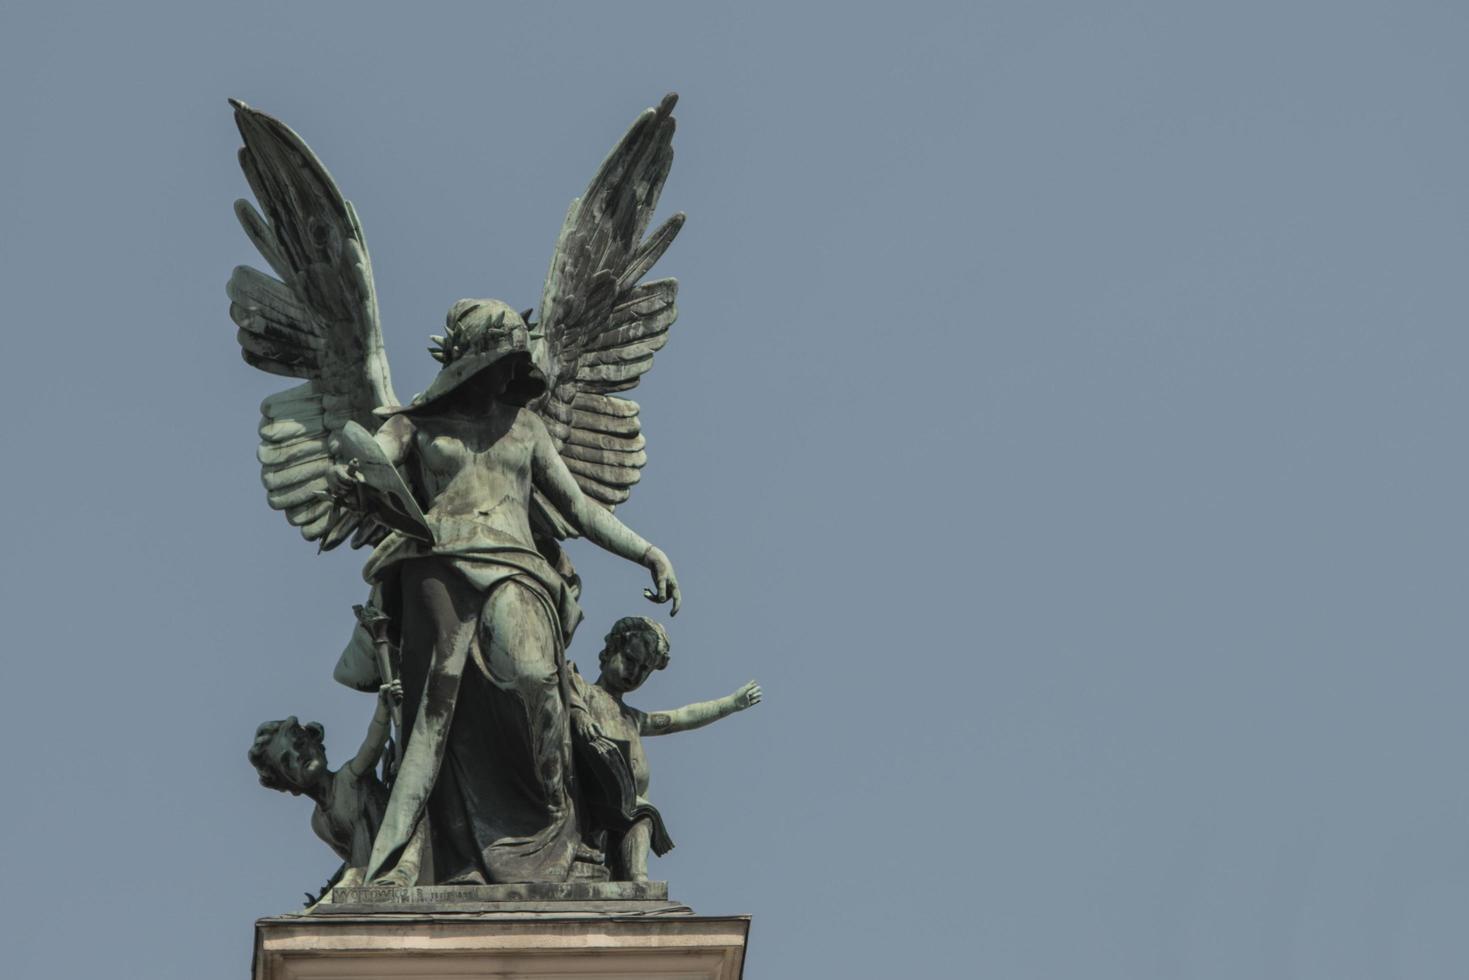 Genio de la escultura de bronce con alas en el techo de la ópera de lvov foto